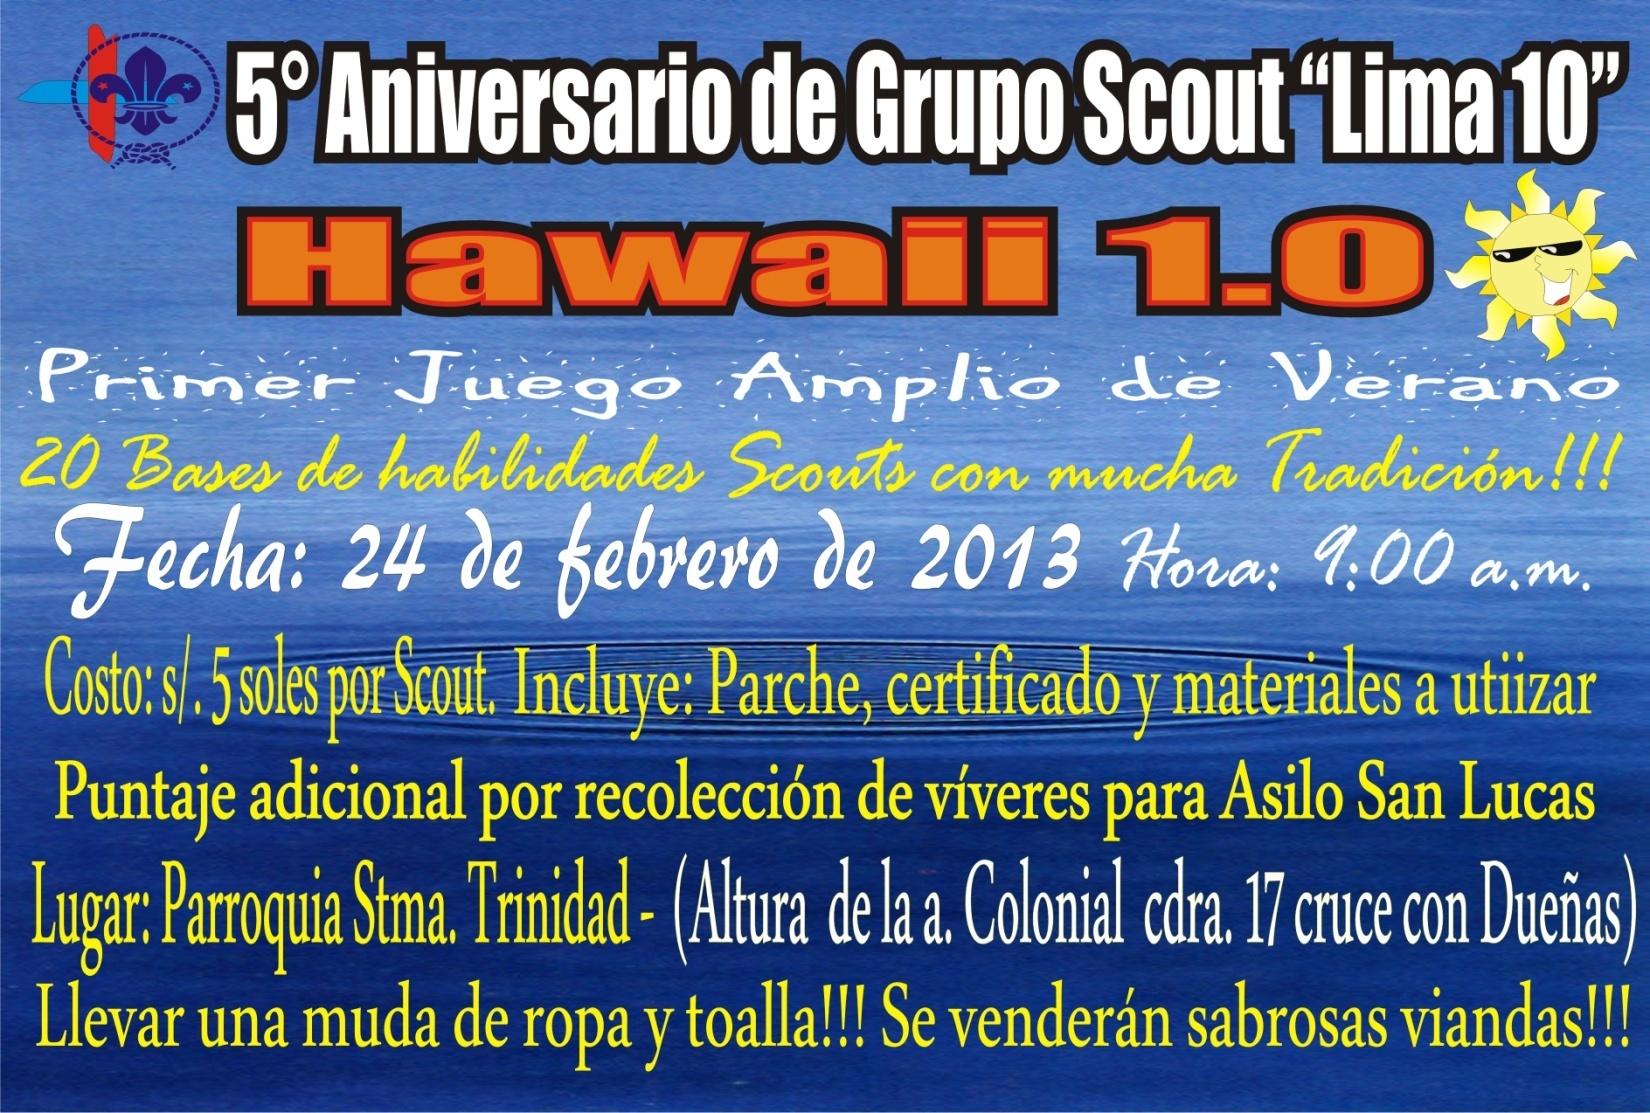 5to ANIVERSARIO DE LIMA 10 Como parte de su actividades por su 5to Aniversario el Grupo Scout Lima 10 realizará el Primer Jugo Amplio de Verano, a llevarse a cabo el domingo 24 de febrero a partir de